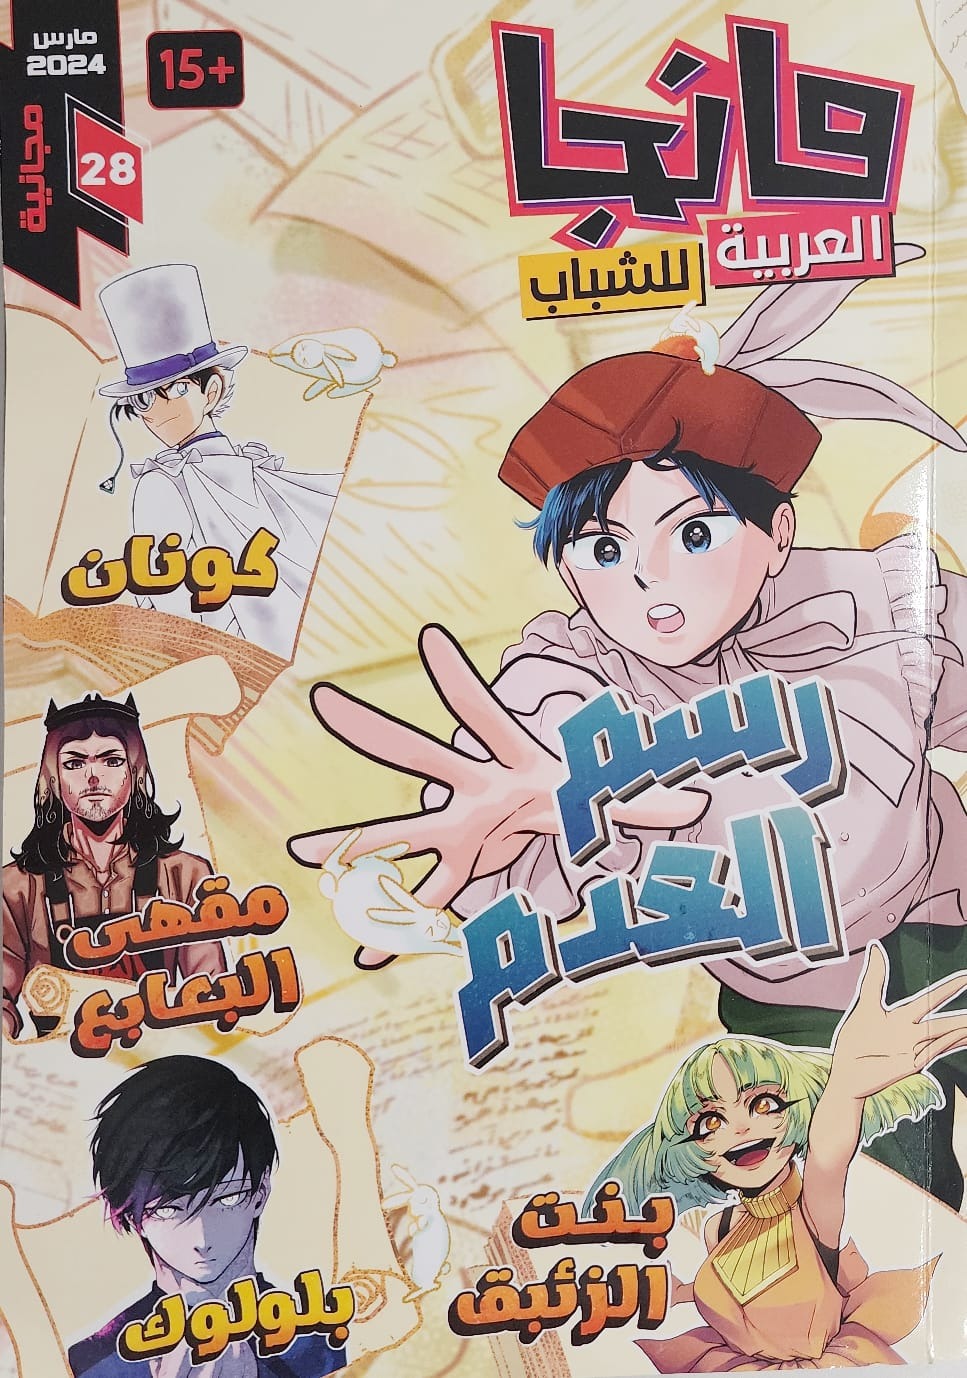 غلاف "مانجا" عربية ويظهر عنوان رواية "رسم العدم" - الشرق